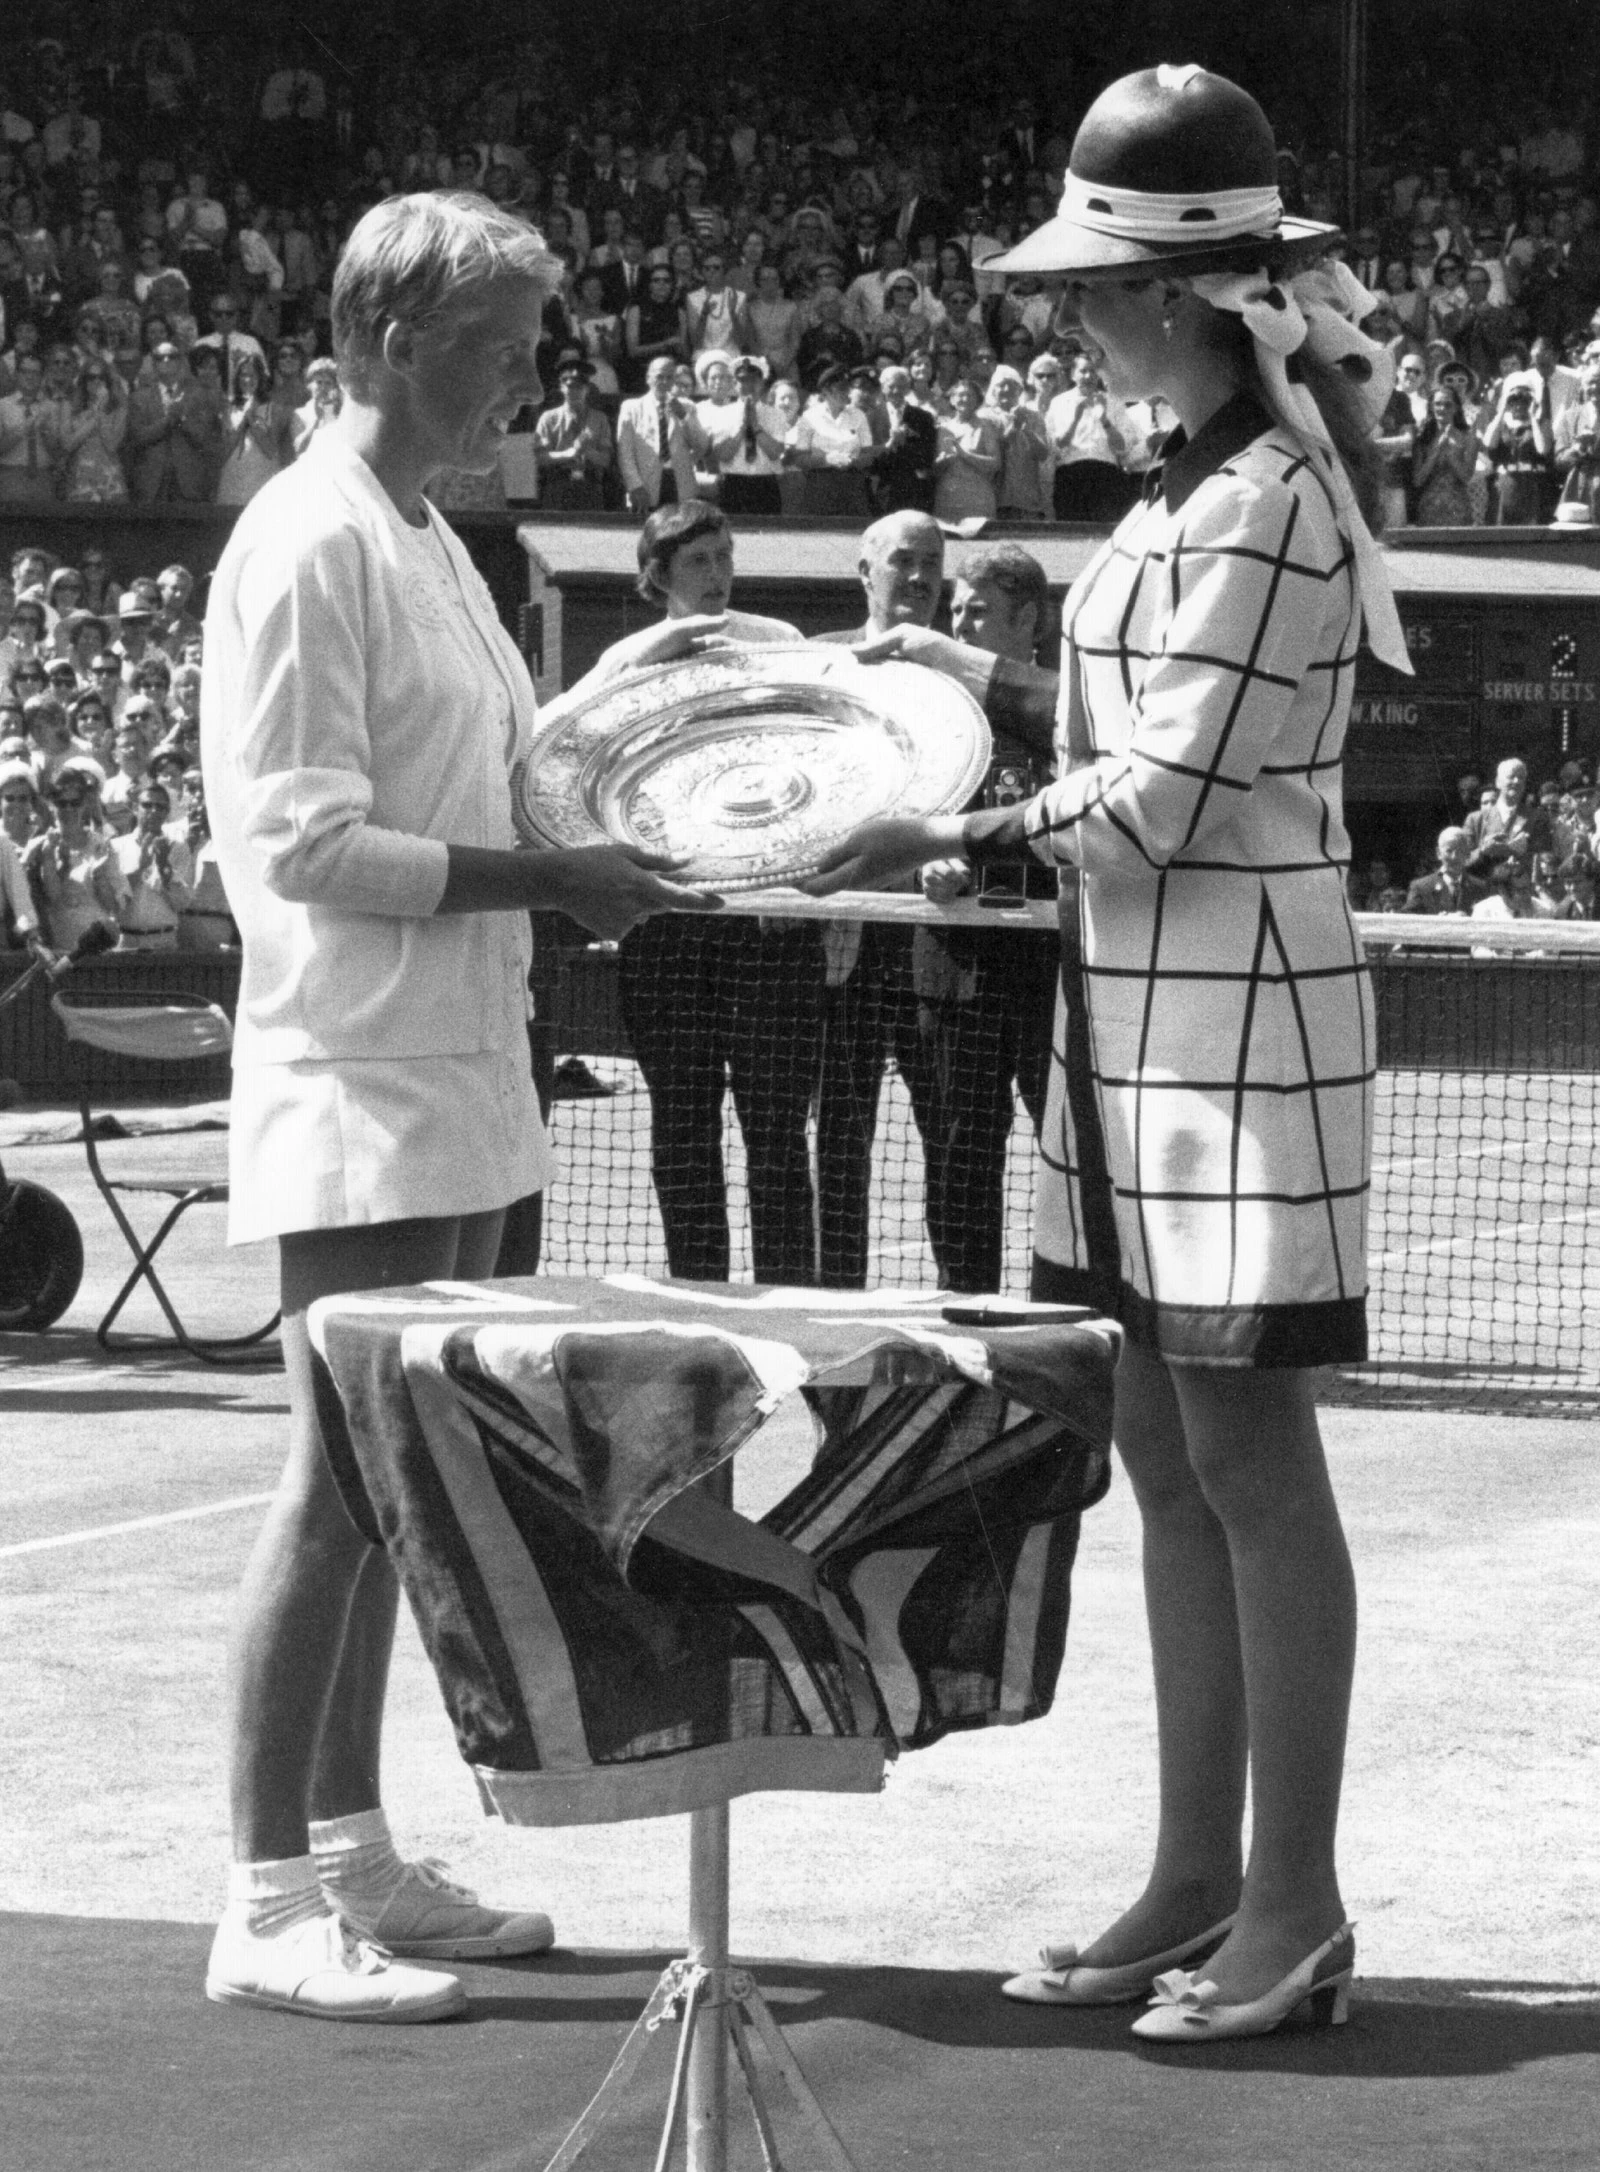 У 1969 році принцеса Анна нагородила Енн Джонс за перемогу в одиночному жіночому розряді на чемпіонаті. 18-річна принцеса вибрала графічне пальто, яке поєднала з туфлями та хусткою у горошок, зав'язаною навколо капелюха.